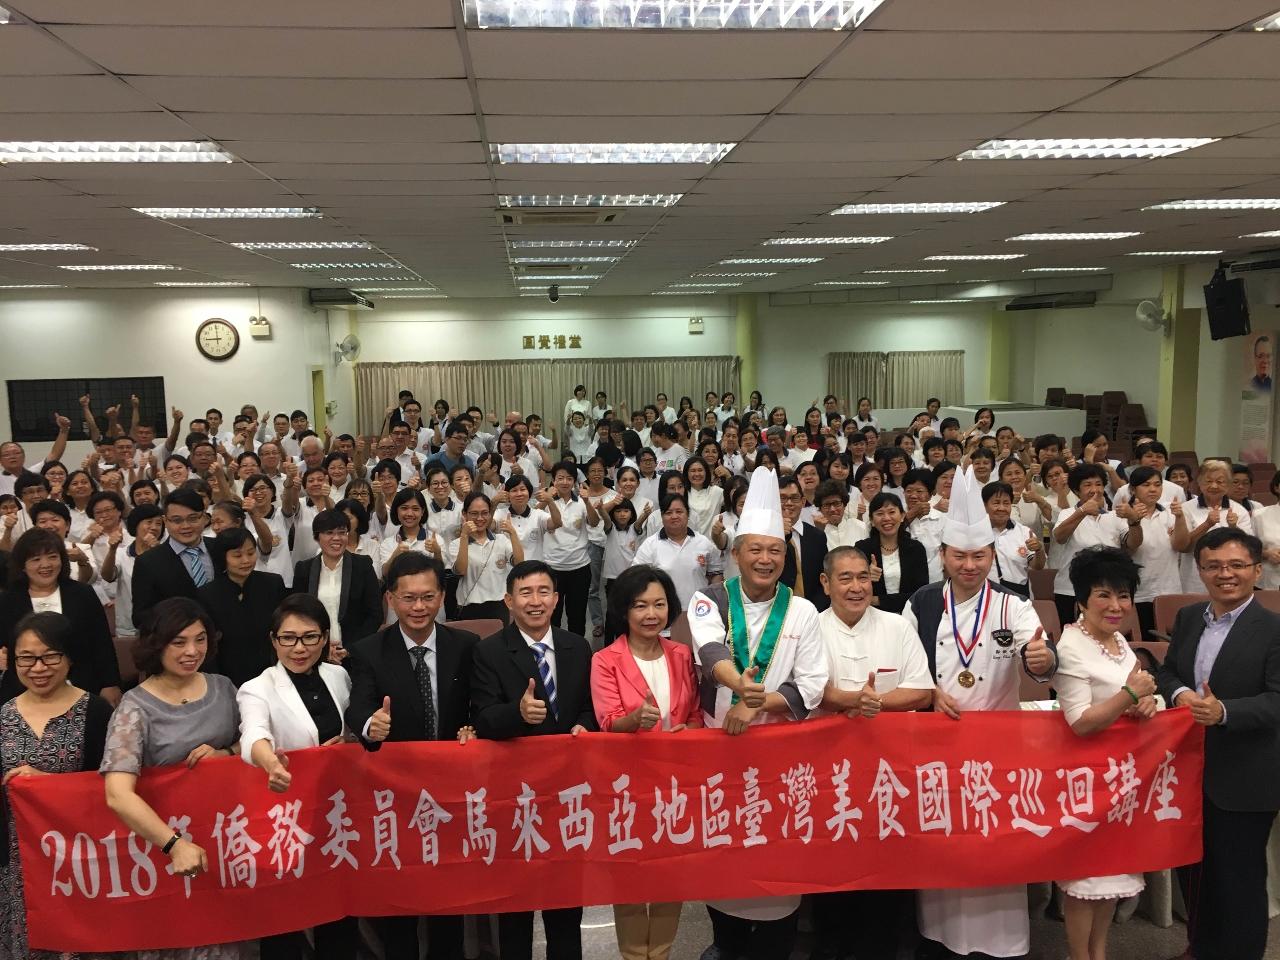 「2018馬來西亞地區臺灣美食國際巡迴講座」開幕儀式全體合影留念。